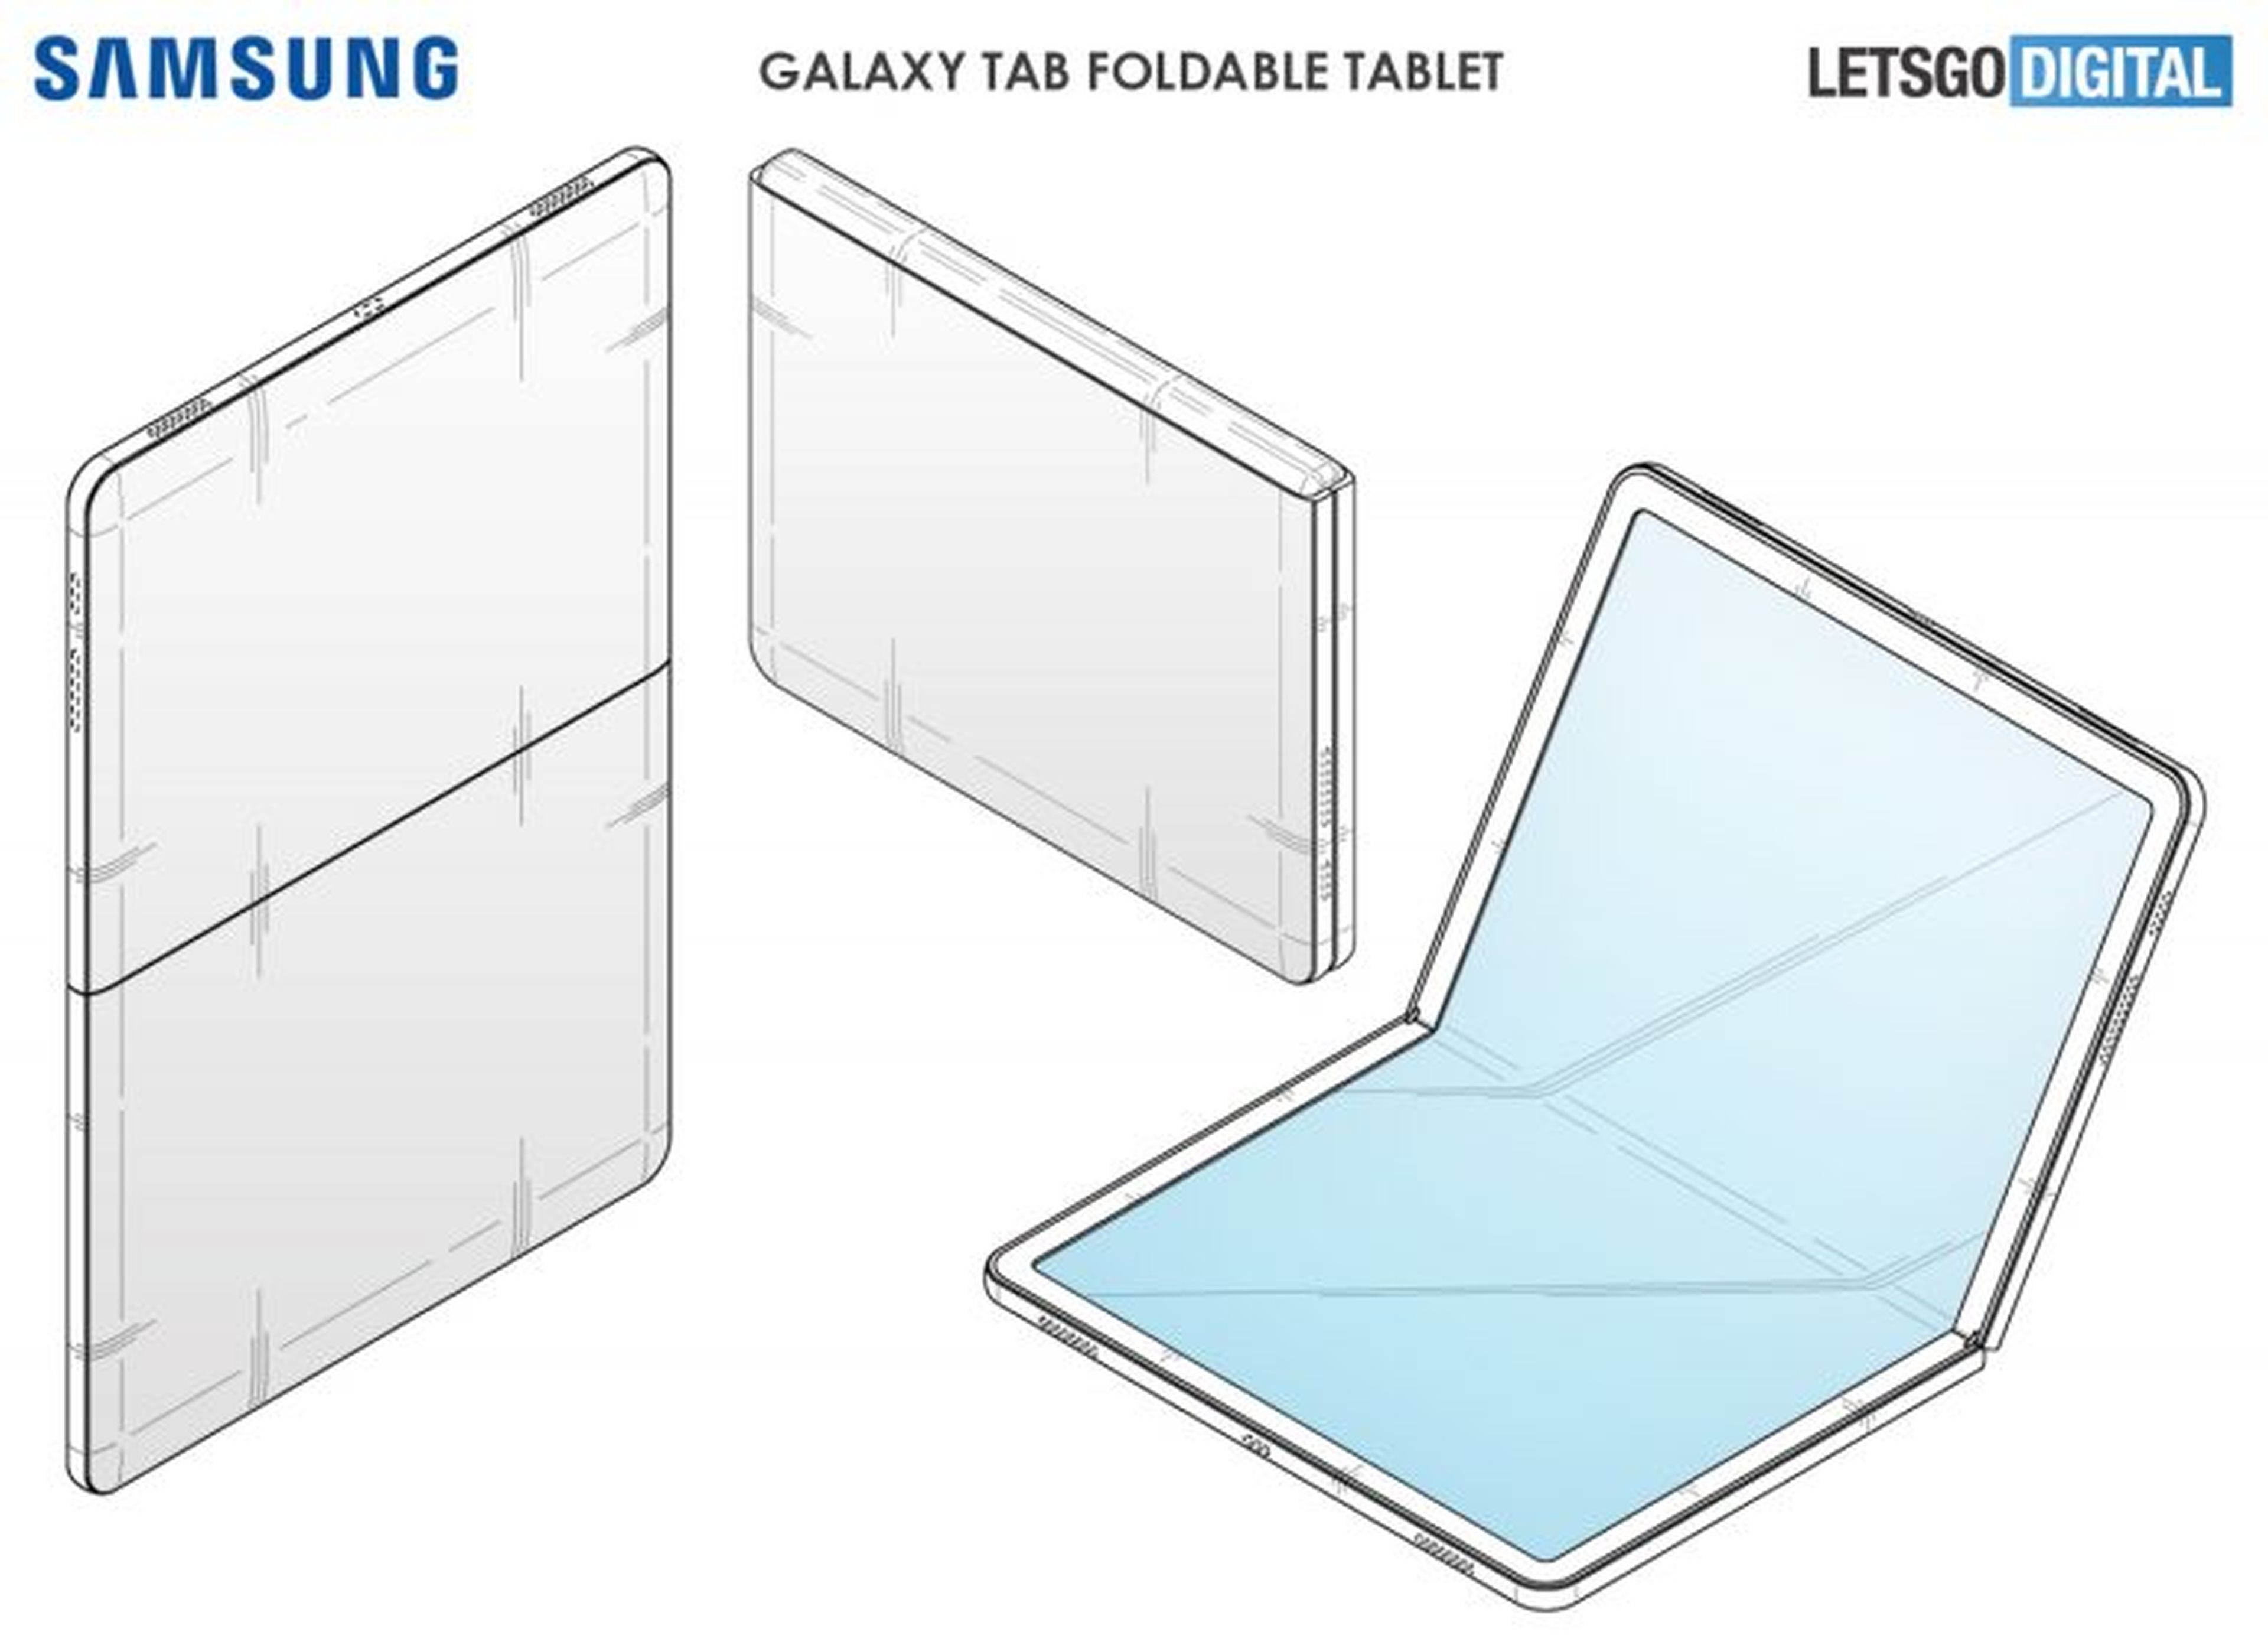 Samsung Galaxy Tab plegable boceto